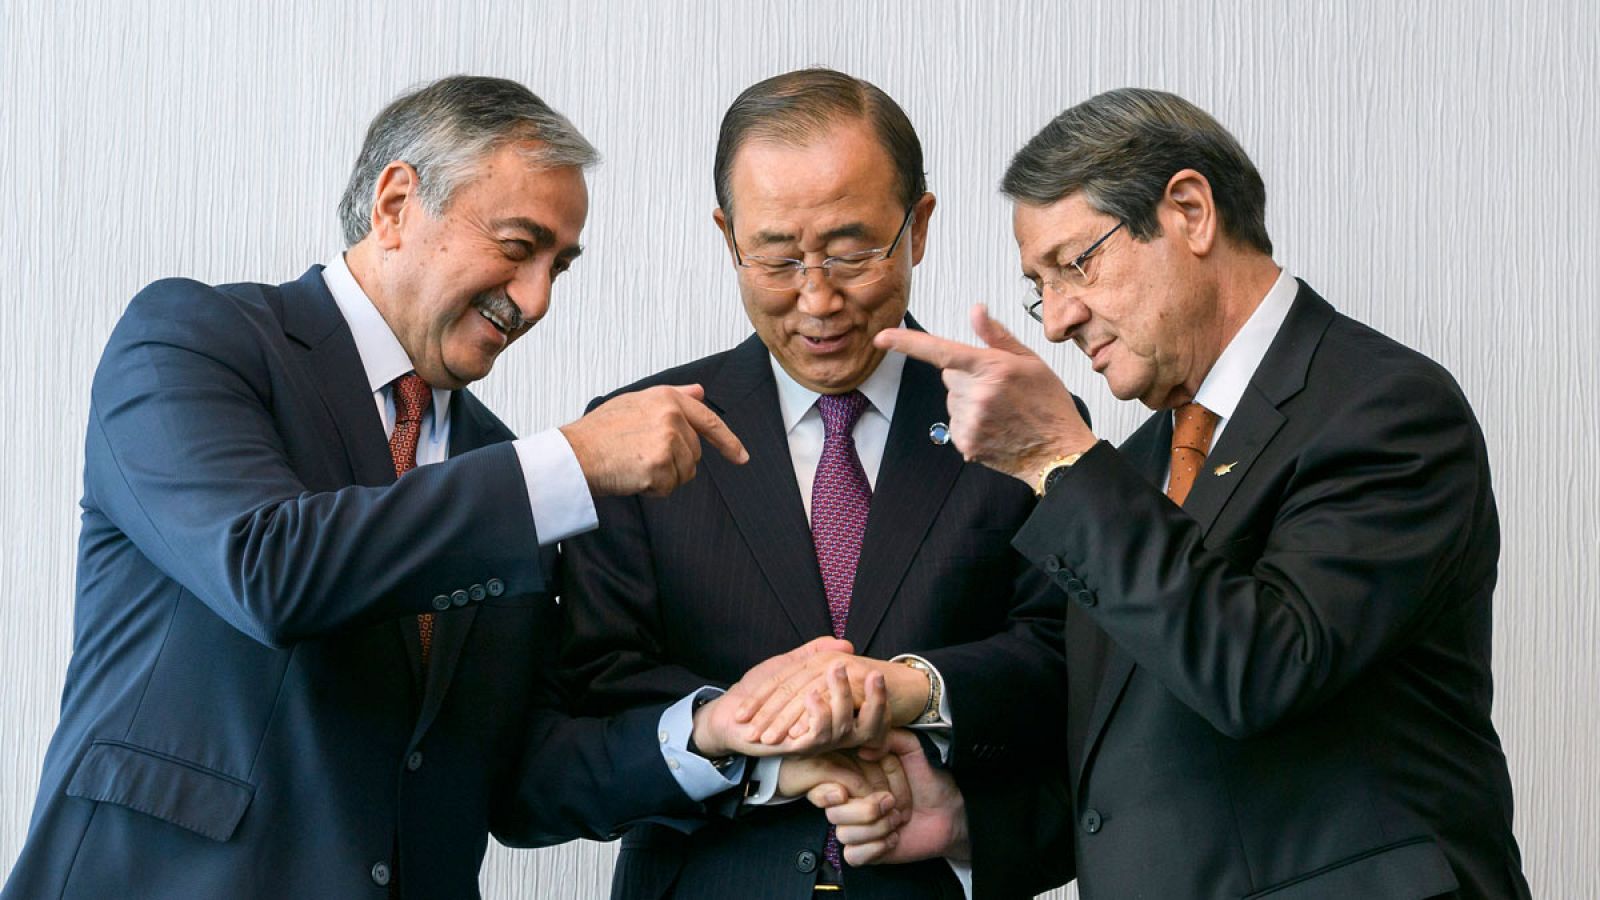 El secretario general de las Naciones Unidas, Ban Ki-Moon (c), posa junto al líder turco-chipriota, Mustafa Akinci (i), y el líder greco-chipriota, Nicos Anastasoades (d), al comienzo de las negociaciones de paz de Chipre celebradas en Mont Pélerin (Suiza).